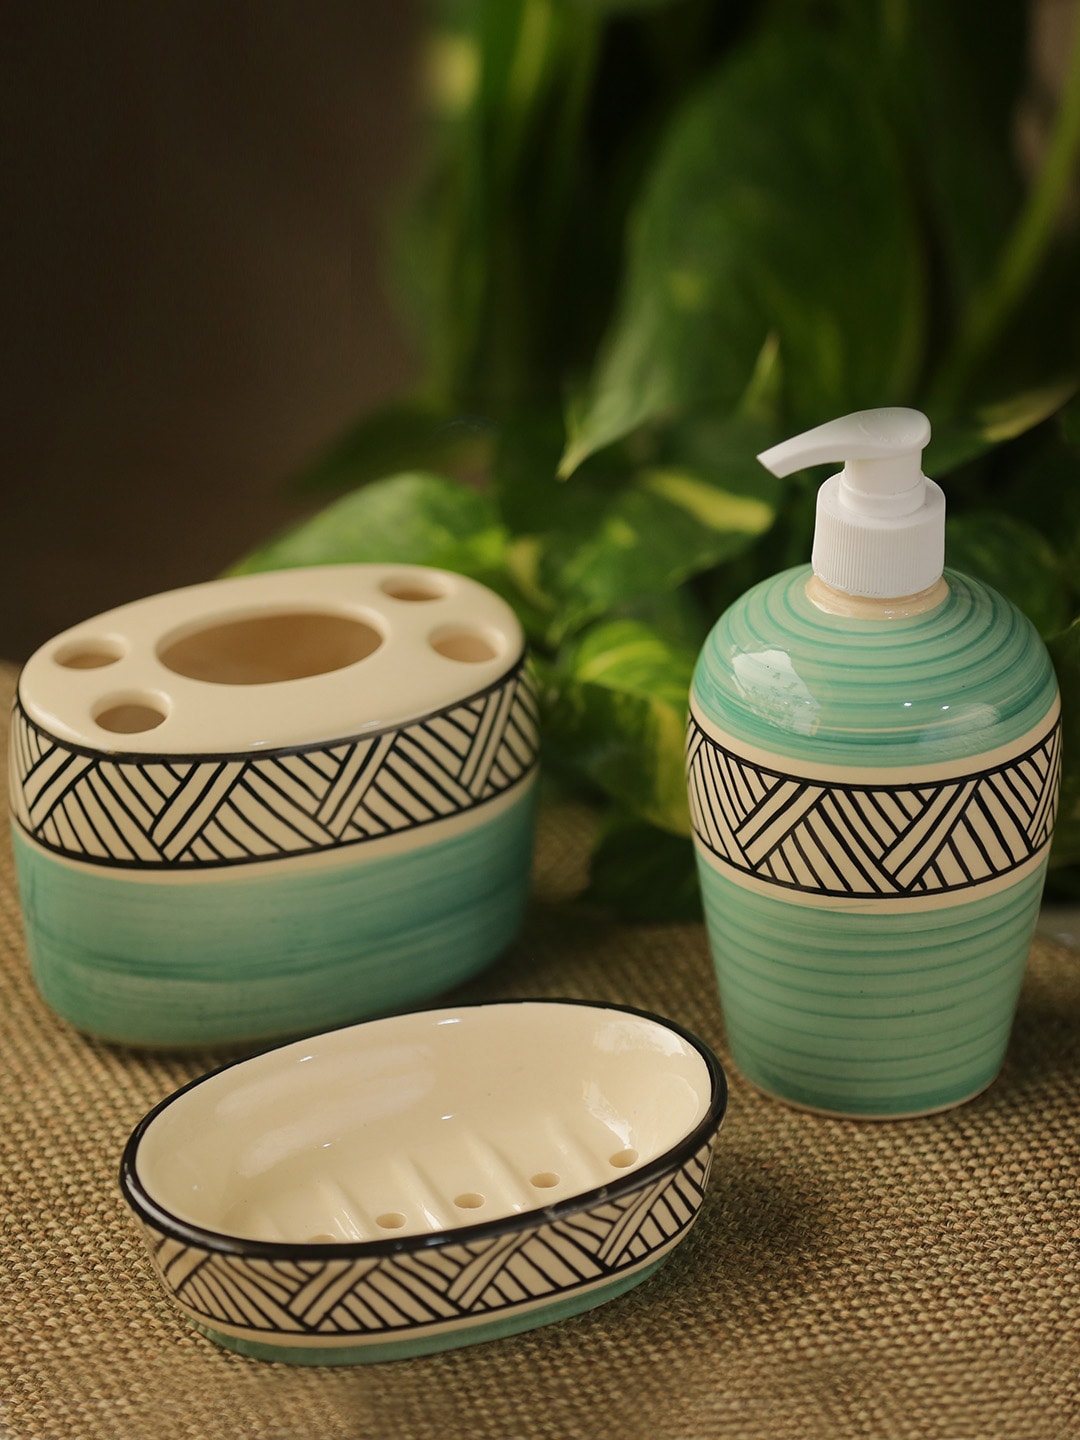 ExclusiveLane Set Of 3 Ceramic Hand-Painted Ceramic Bathroom Accessories Price in India